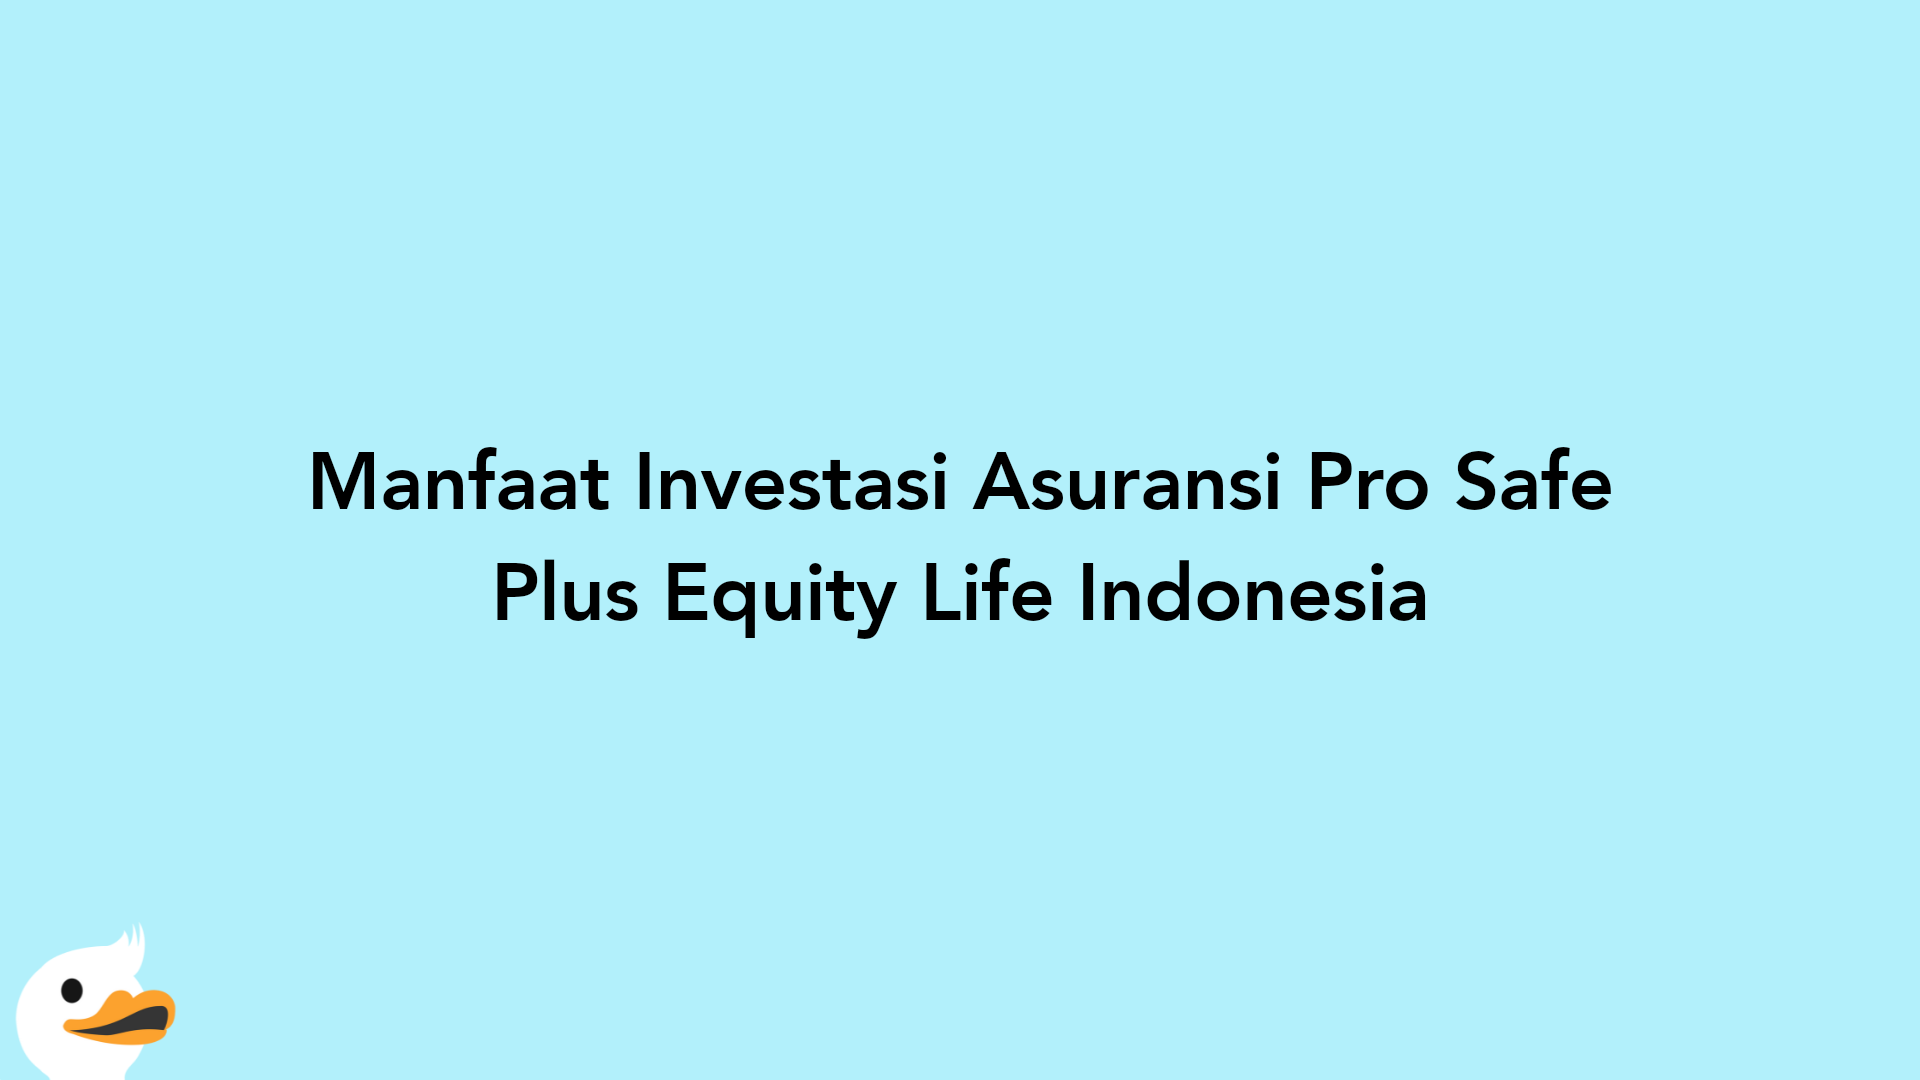 Manfaat Investasi Asuransi Pro Safe Plus Equity Life Indonesia